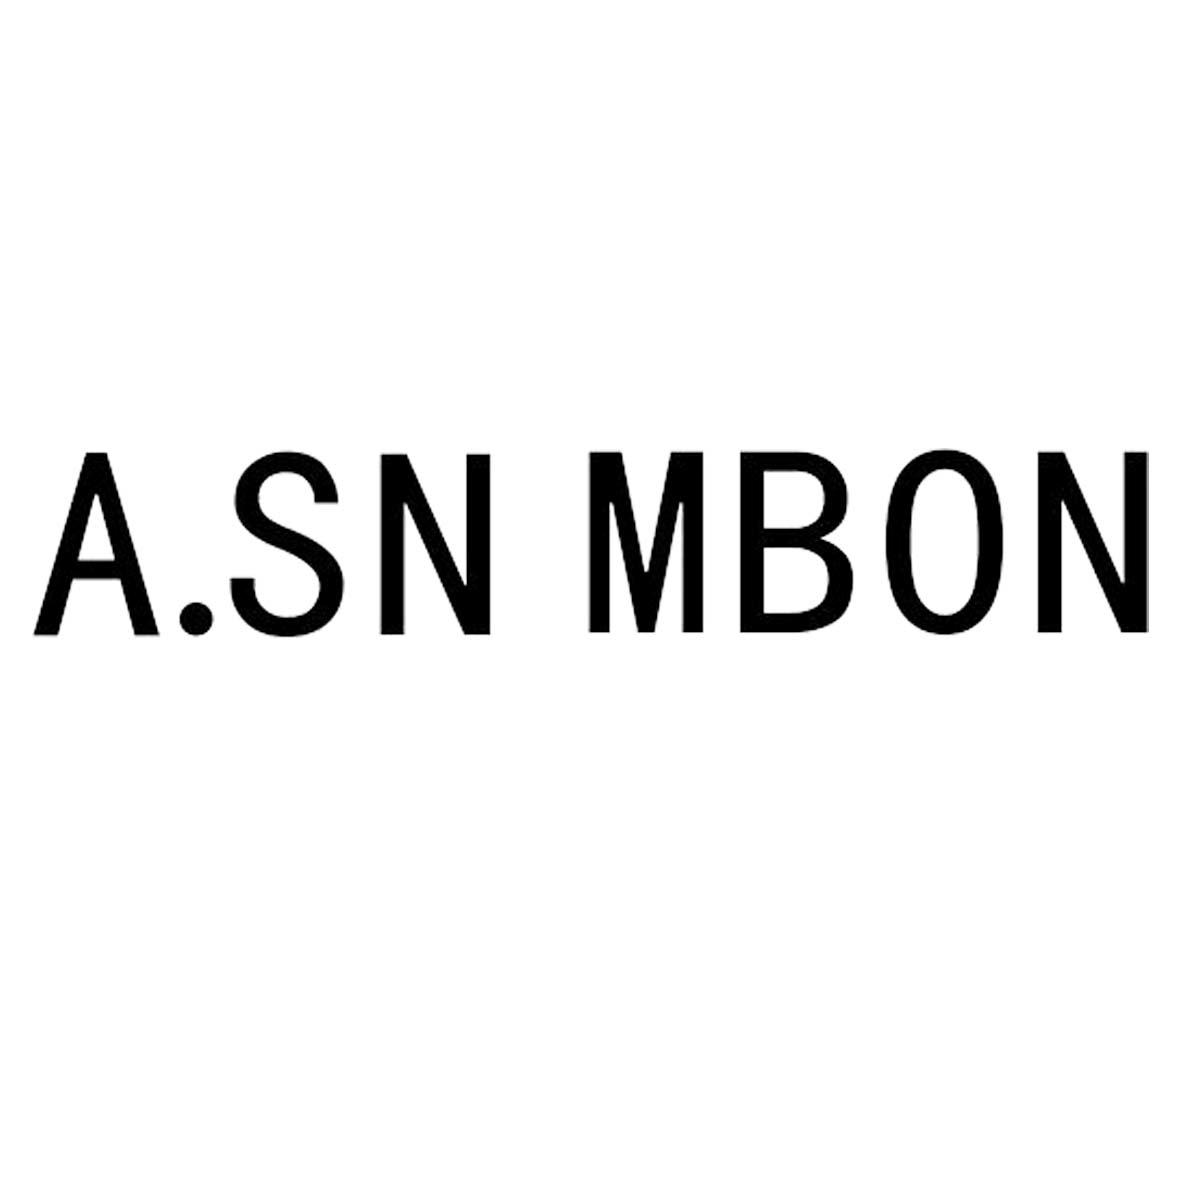 A.SN MBON